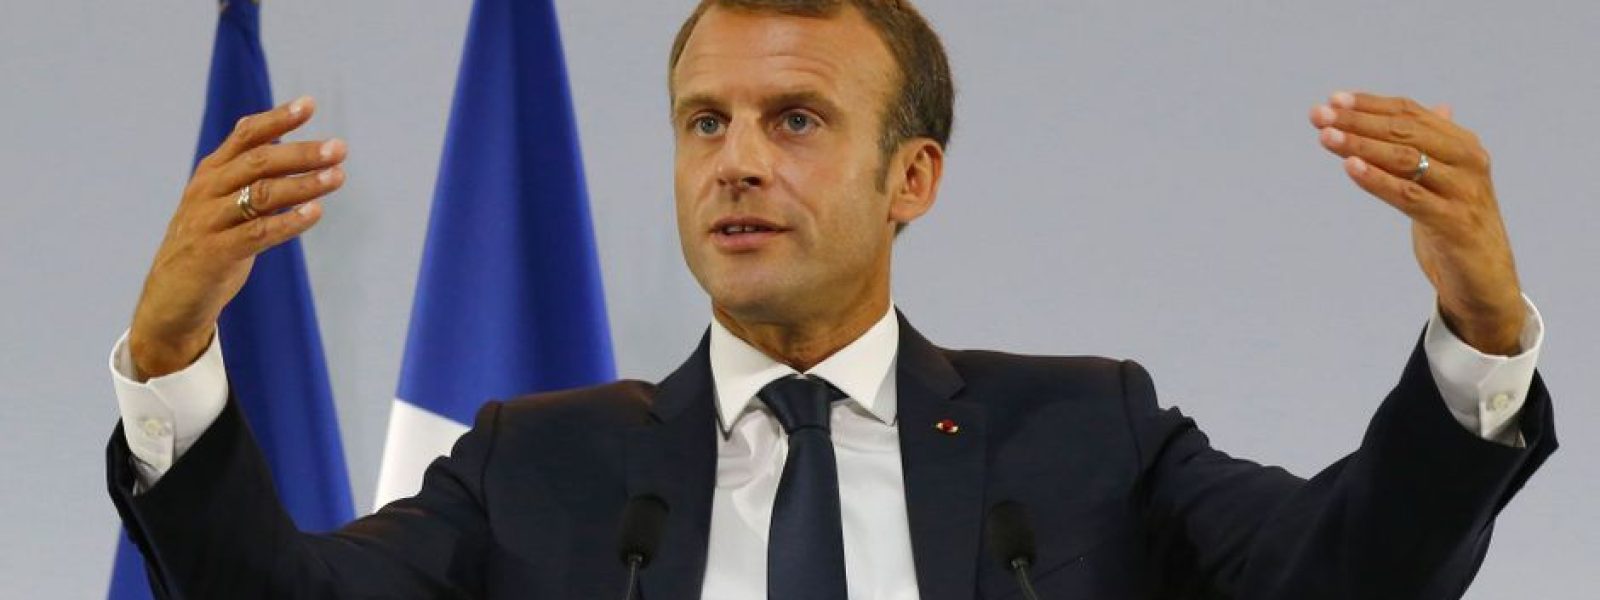 Le-plan-pauvrete-n-est-pas-un-plan-charite-dit-Emmanuel-Macron